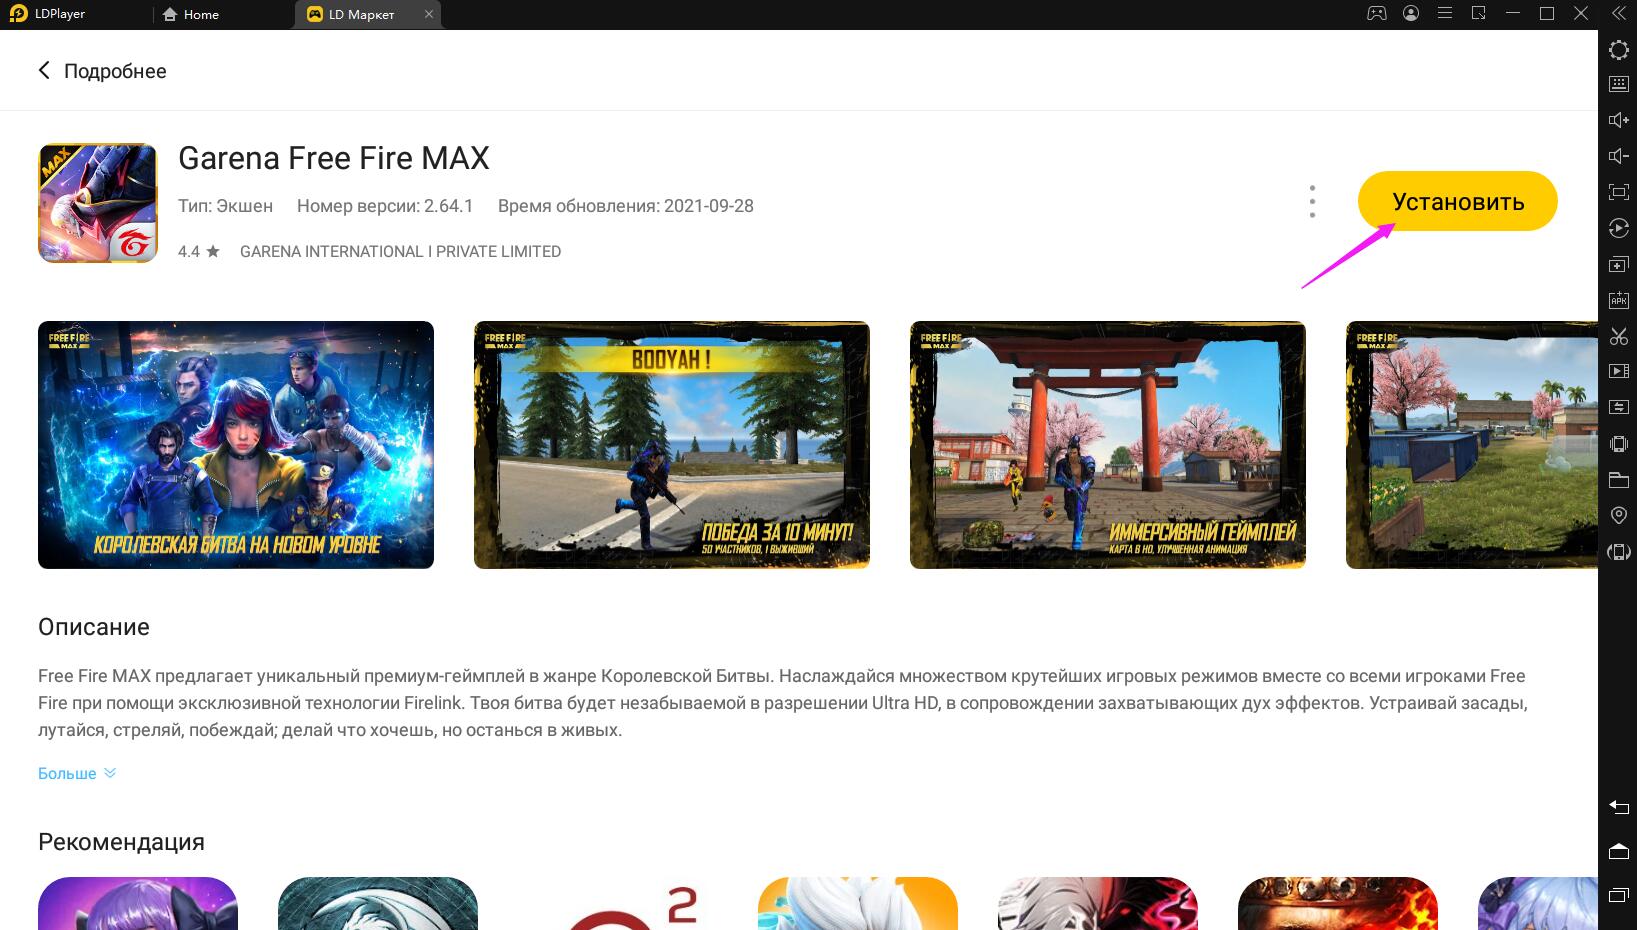 Глобальная версия Free Fire MAX выйдет 28 сентября | Как играть в «Free Fire MAX» бесплатно на пк